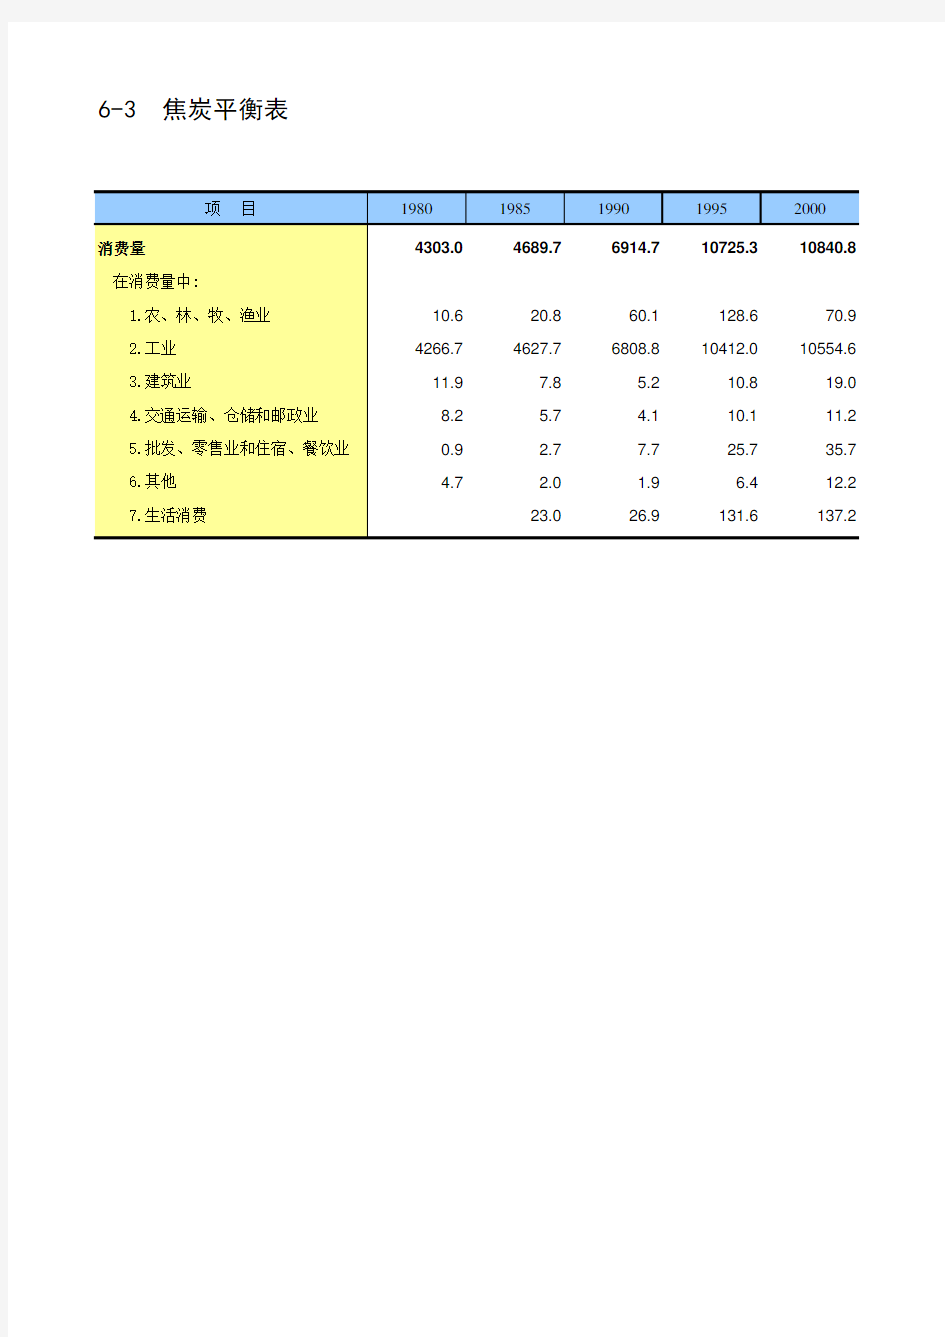 中国第三产业统计年鉴2017：6-3  焦炭平衡表